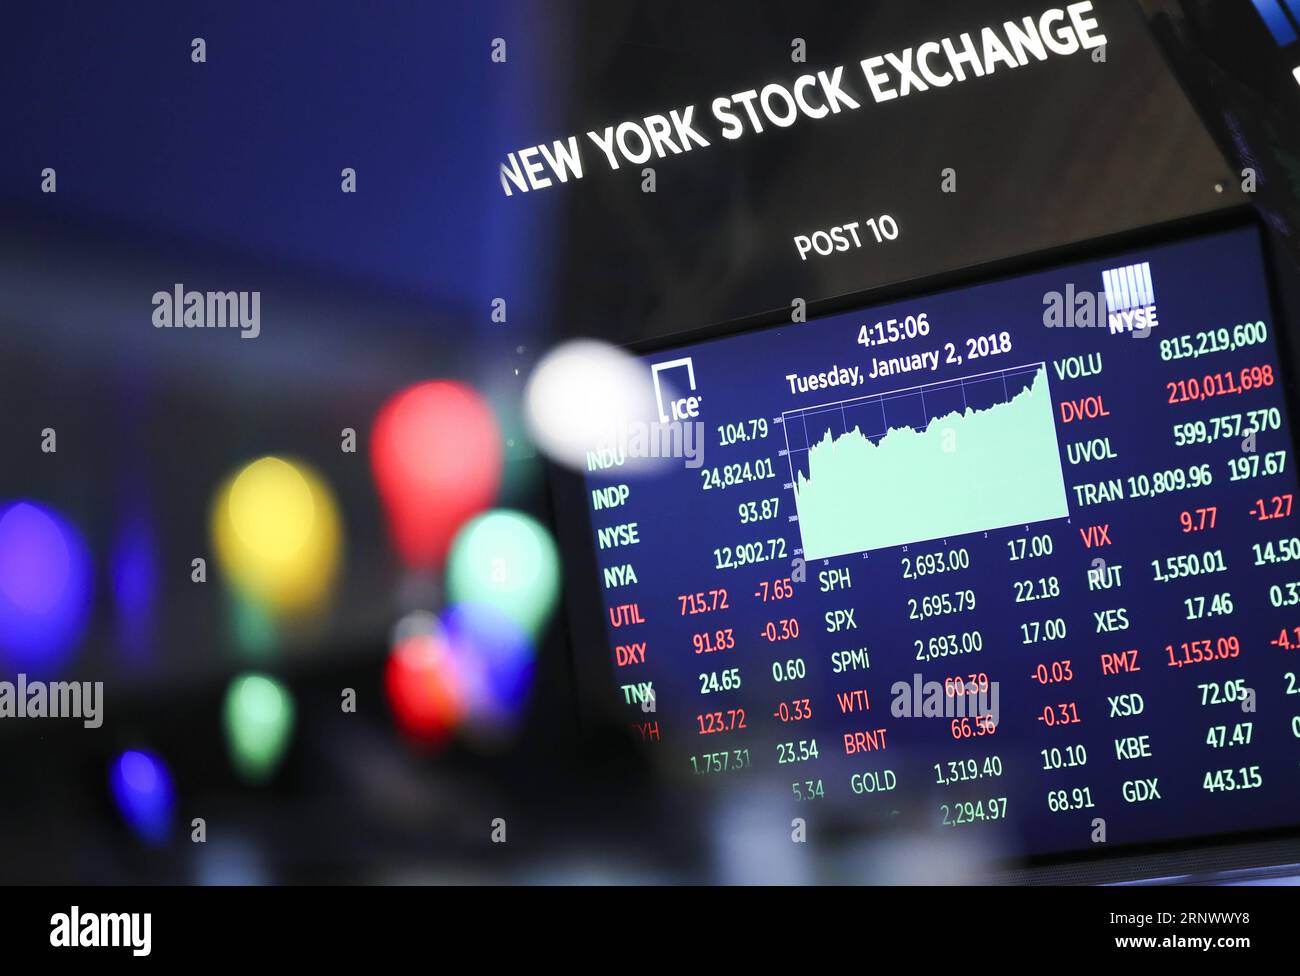 (180102) -- NEW YORK, 2. Januar 2018 -- Marktindizes werden am 2. Januar 2018 auf einem Bildschirm an der New York Stock Exchange in New York, USA, angezeigt. Die US-Aktien stiegen am Dienstag an, wobei der Nasdaq Composite Index zum ersten Mal über der großen Rundenzahl von 7.000 Punkten lag, als die Wall Street 2018 mit einer hohen Note startete. Der Dow Jones Industrial Average stieg um 104,79 Punkte oder 0,42 Prozent auf 24.824.01. Die S&P 500 fügte 2.695,79 22,18 Punkte oder 0,83 Prozent hinzu. Der Nasdaq Composite Index sprang 103,51 Punkte oder 1,50 Prozent auf 7.006,90 Punkte. ) U.S.-NEW YORK-STOCKS-FIRST TRADING Stockfoto